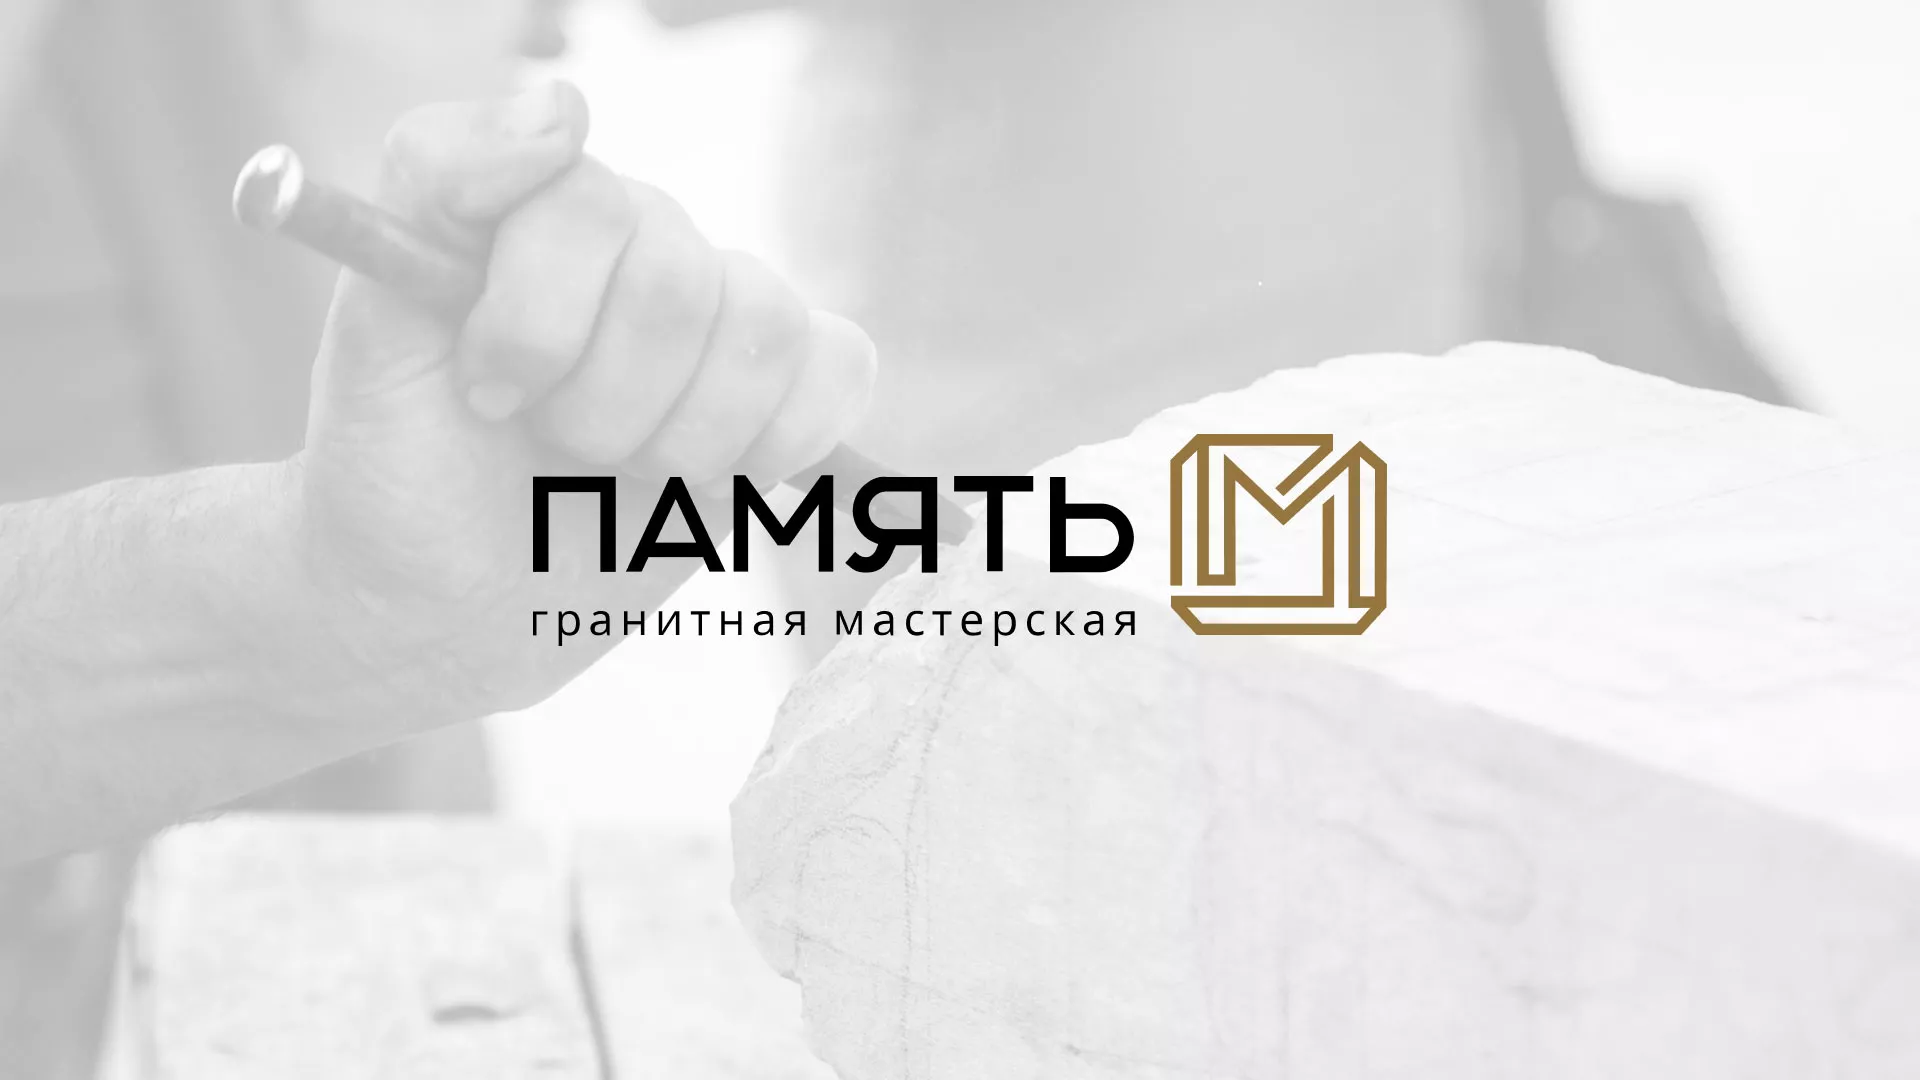 Разработка логотипа и сайта компании «Память-М» в Юхнове